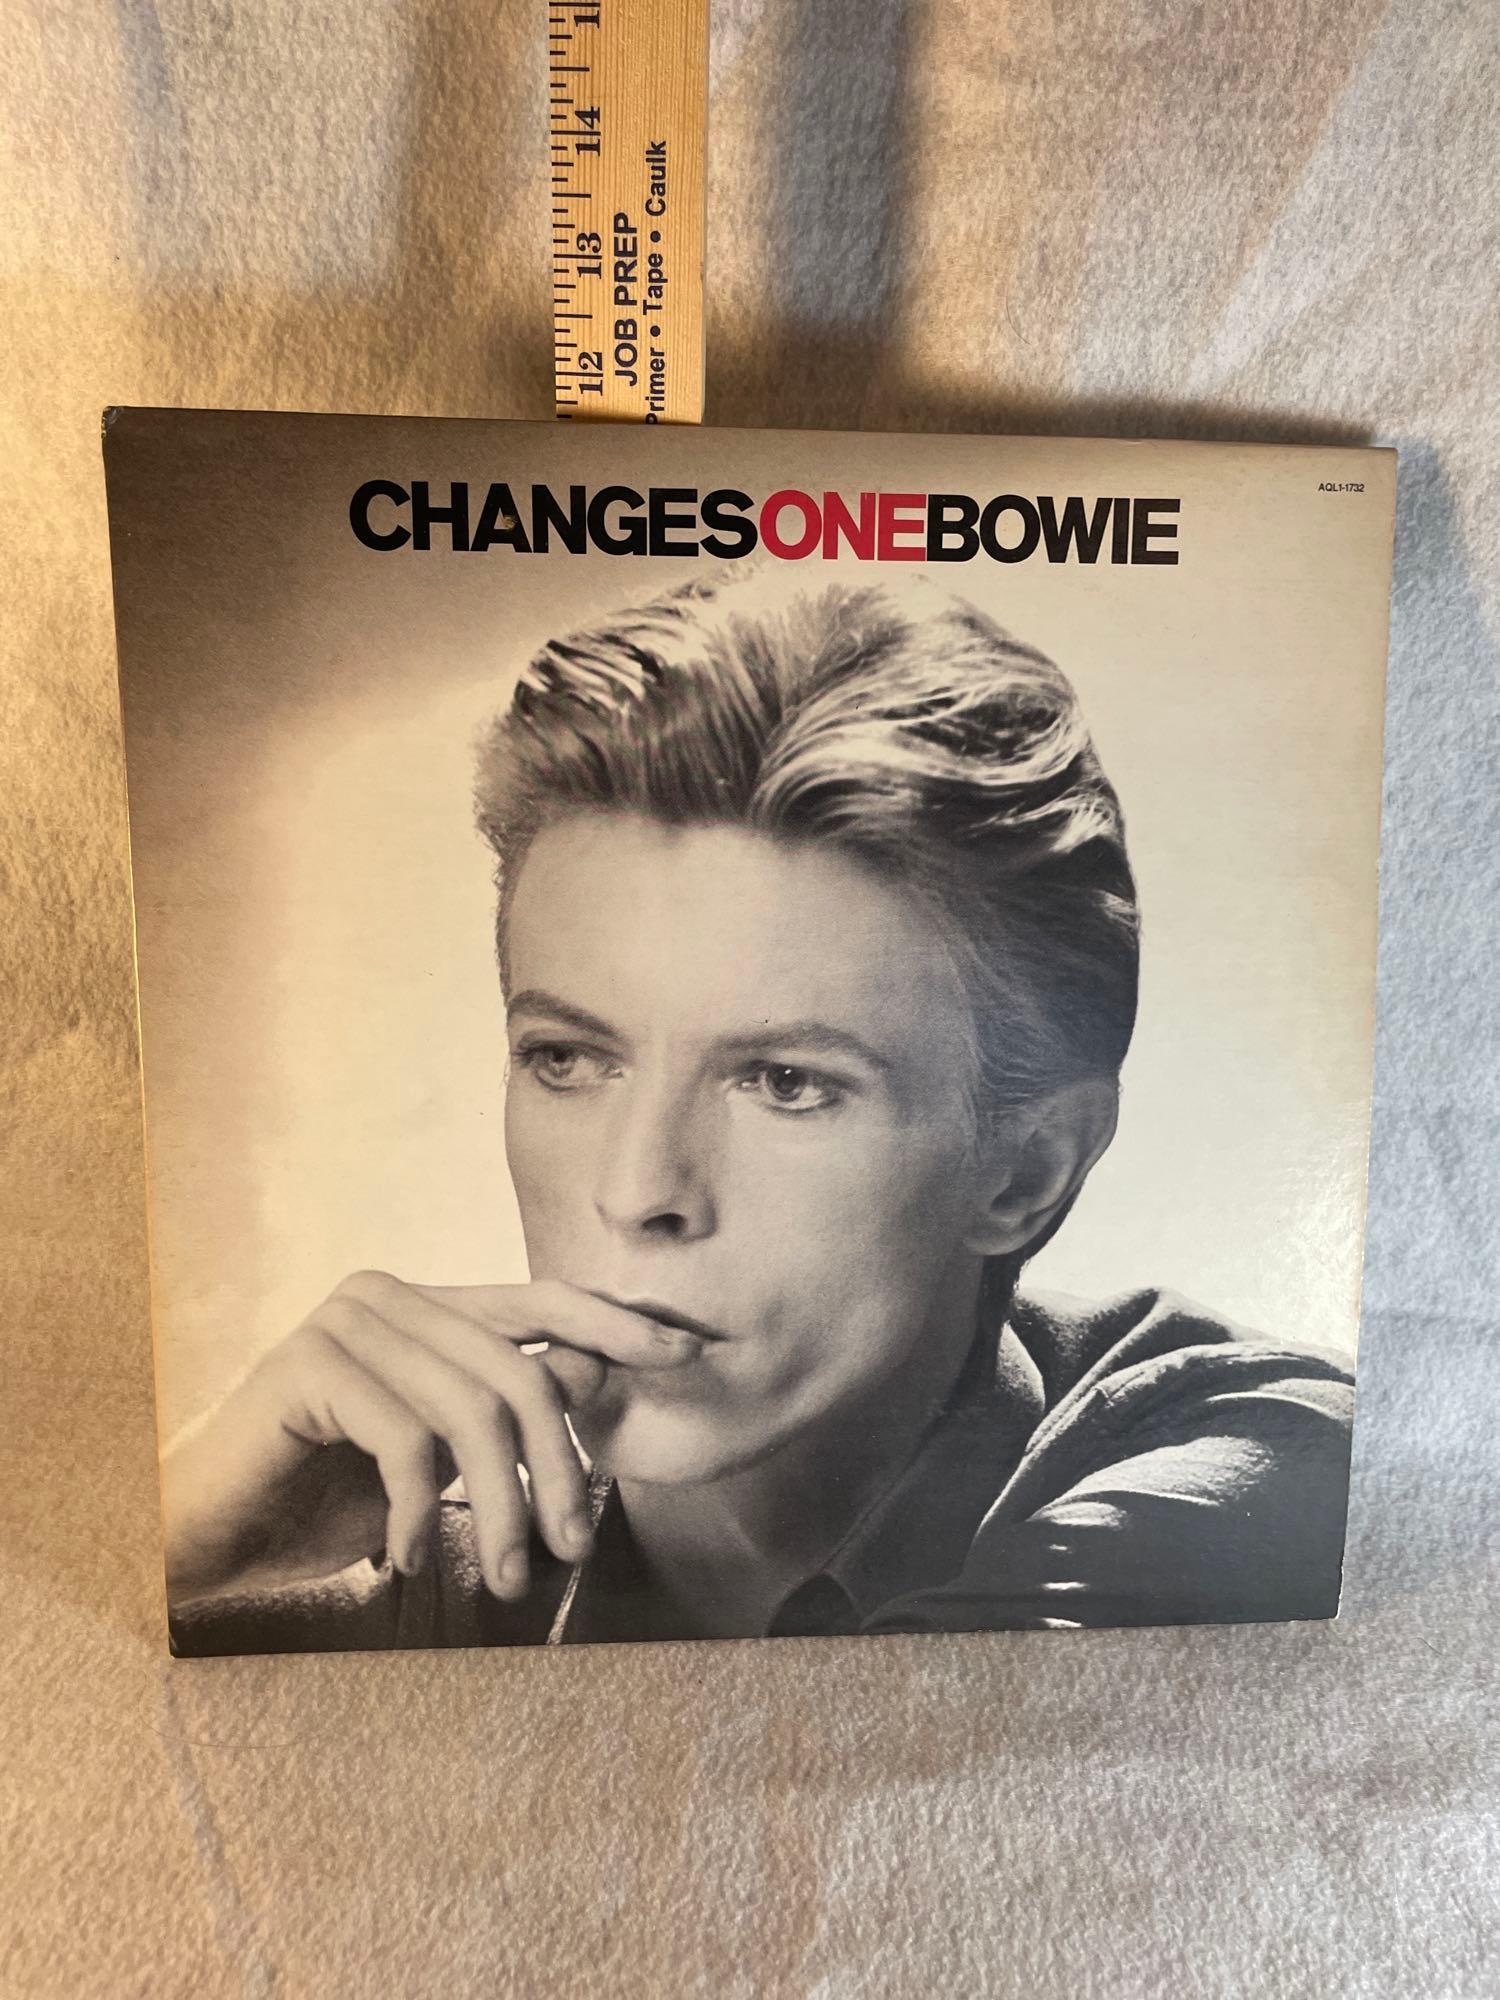 David Bowie Original Vinyl Records (3)